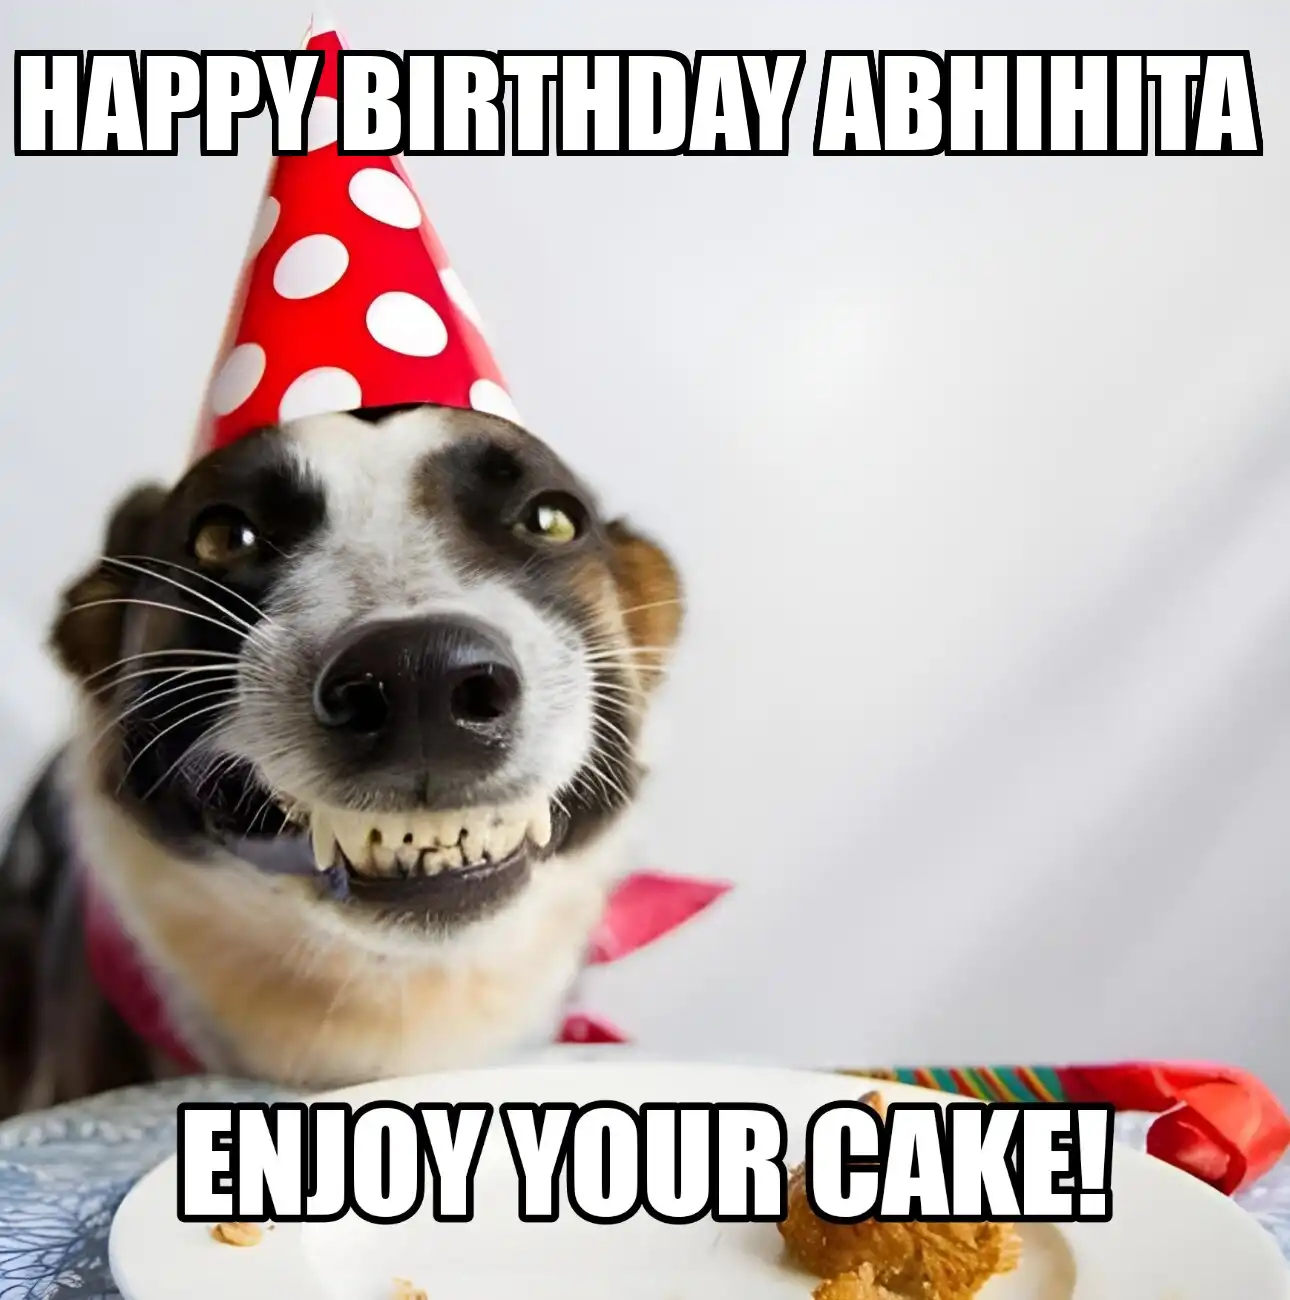 Happy Birthday Abhihita Enjoy Your Cake Dog Meme